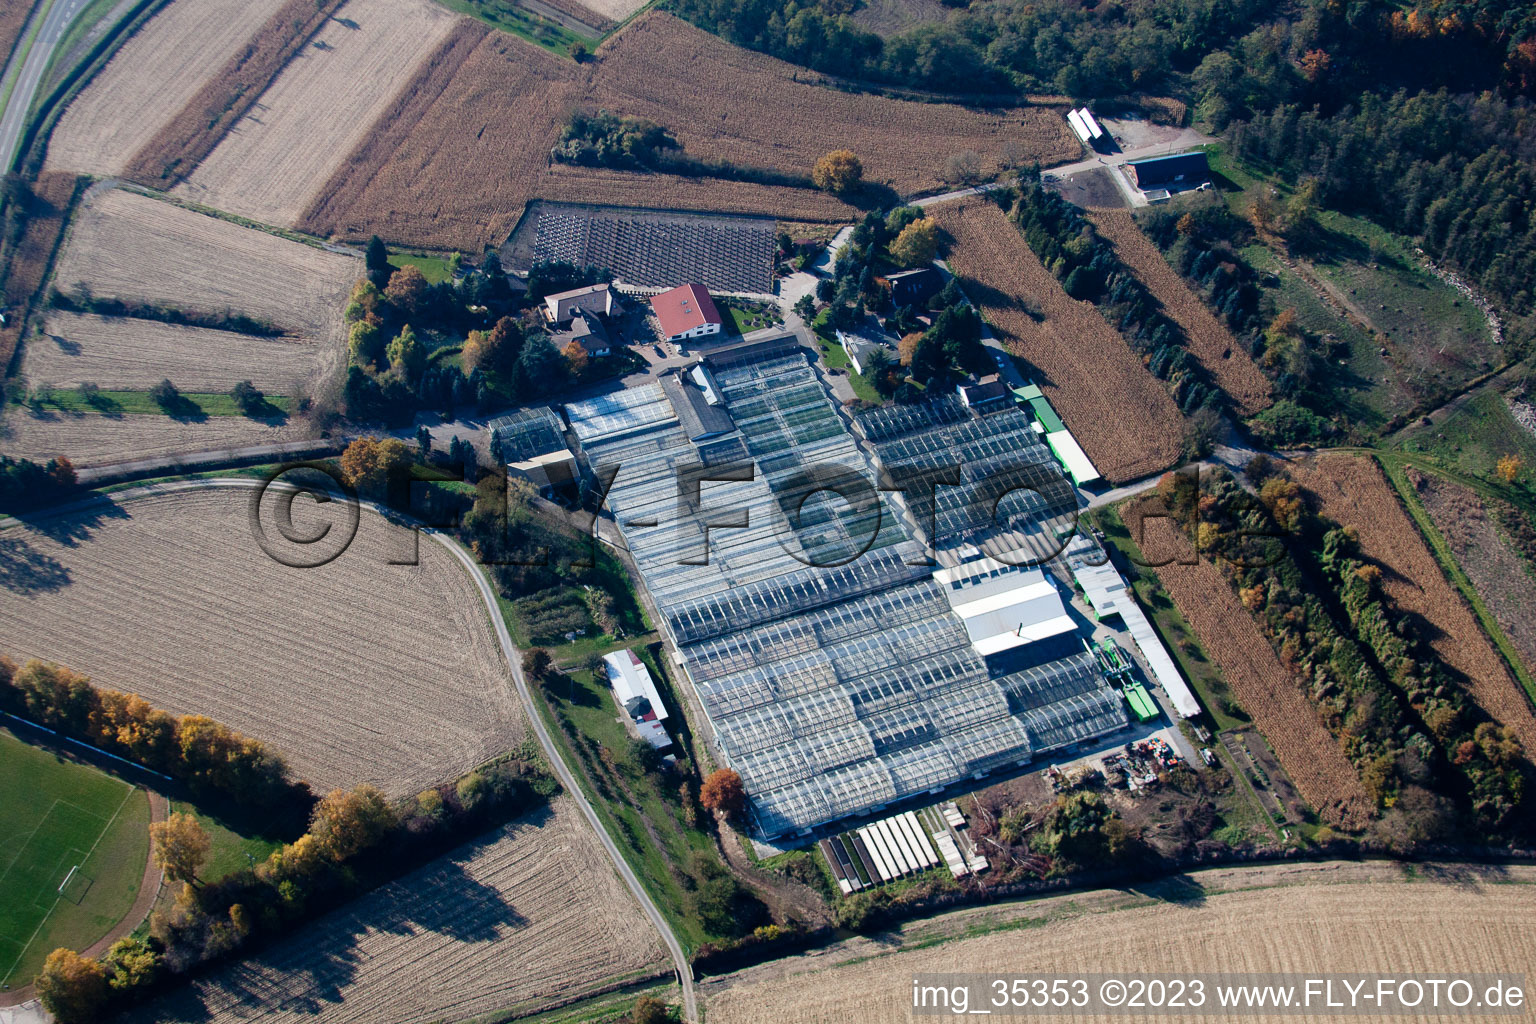 Géranium Endisch GmbH à Hagenbach dans le département Rhénanie-Palatinat, Allemagne depuis l'avion